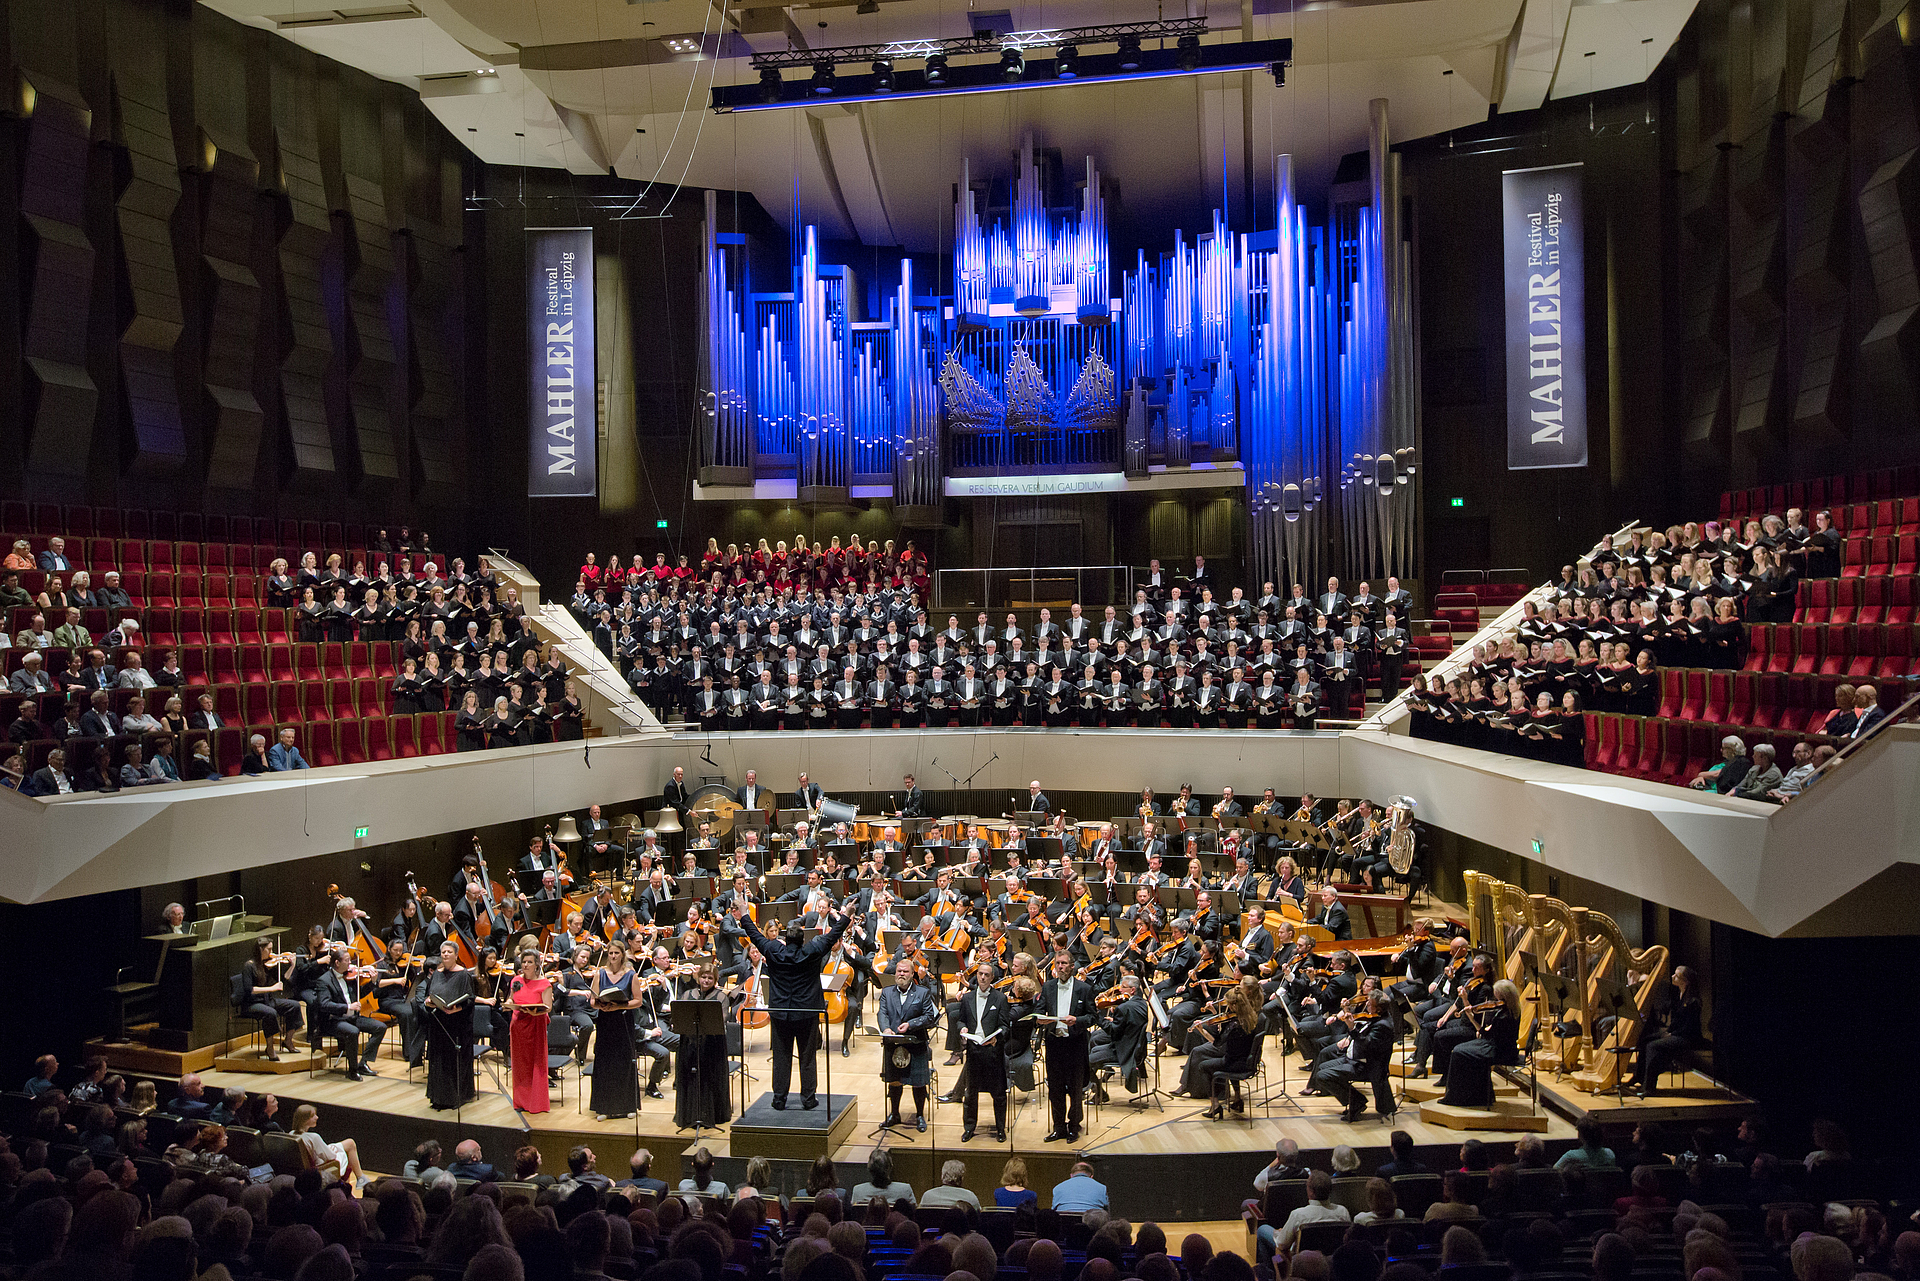   Musik als Weltverständnis | Rückblick auf das zweite Mahler-Festival in Leipzig  